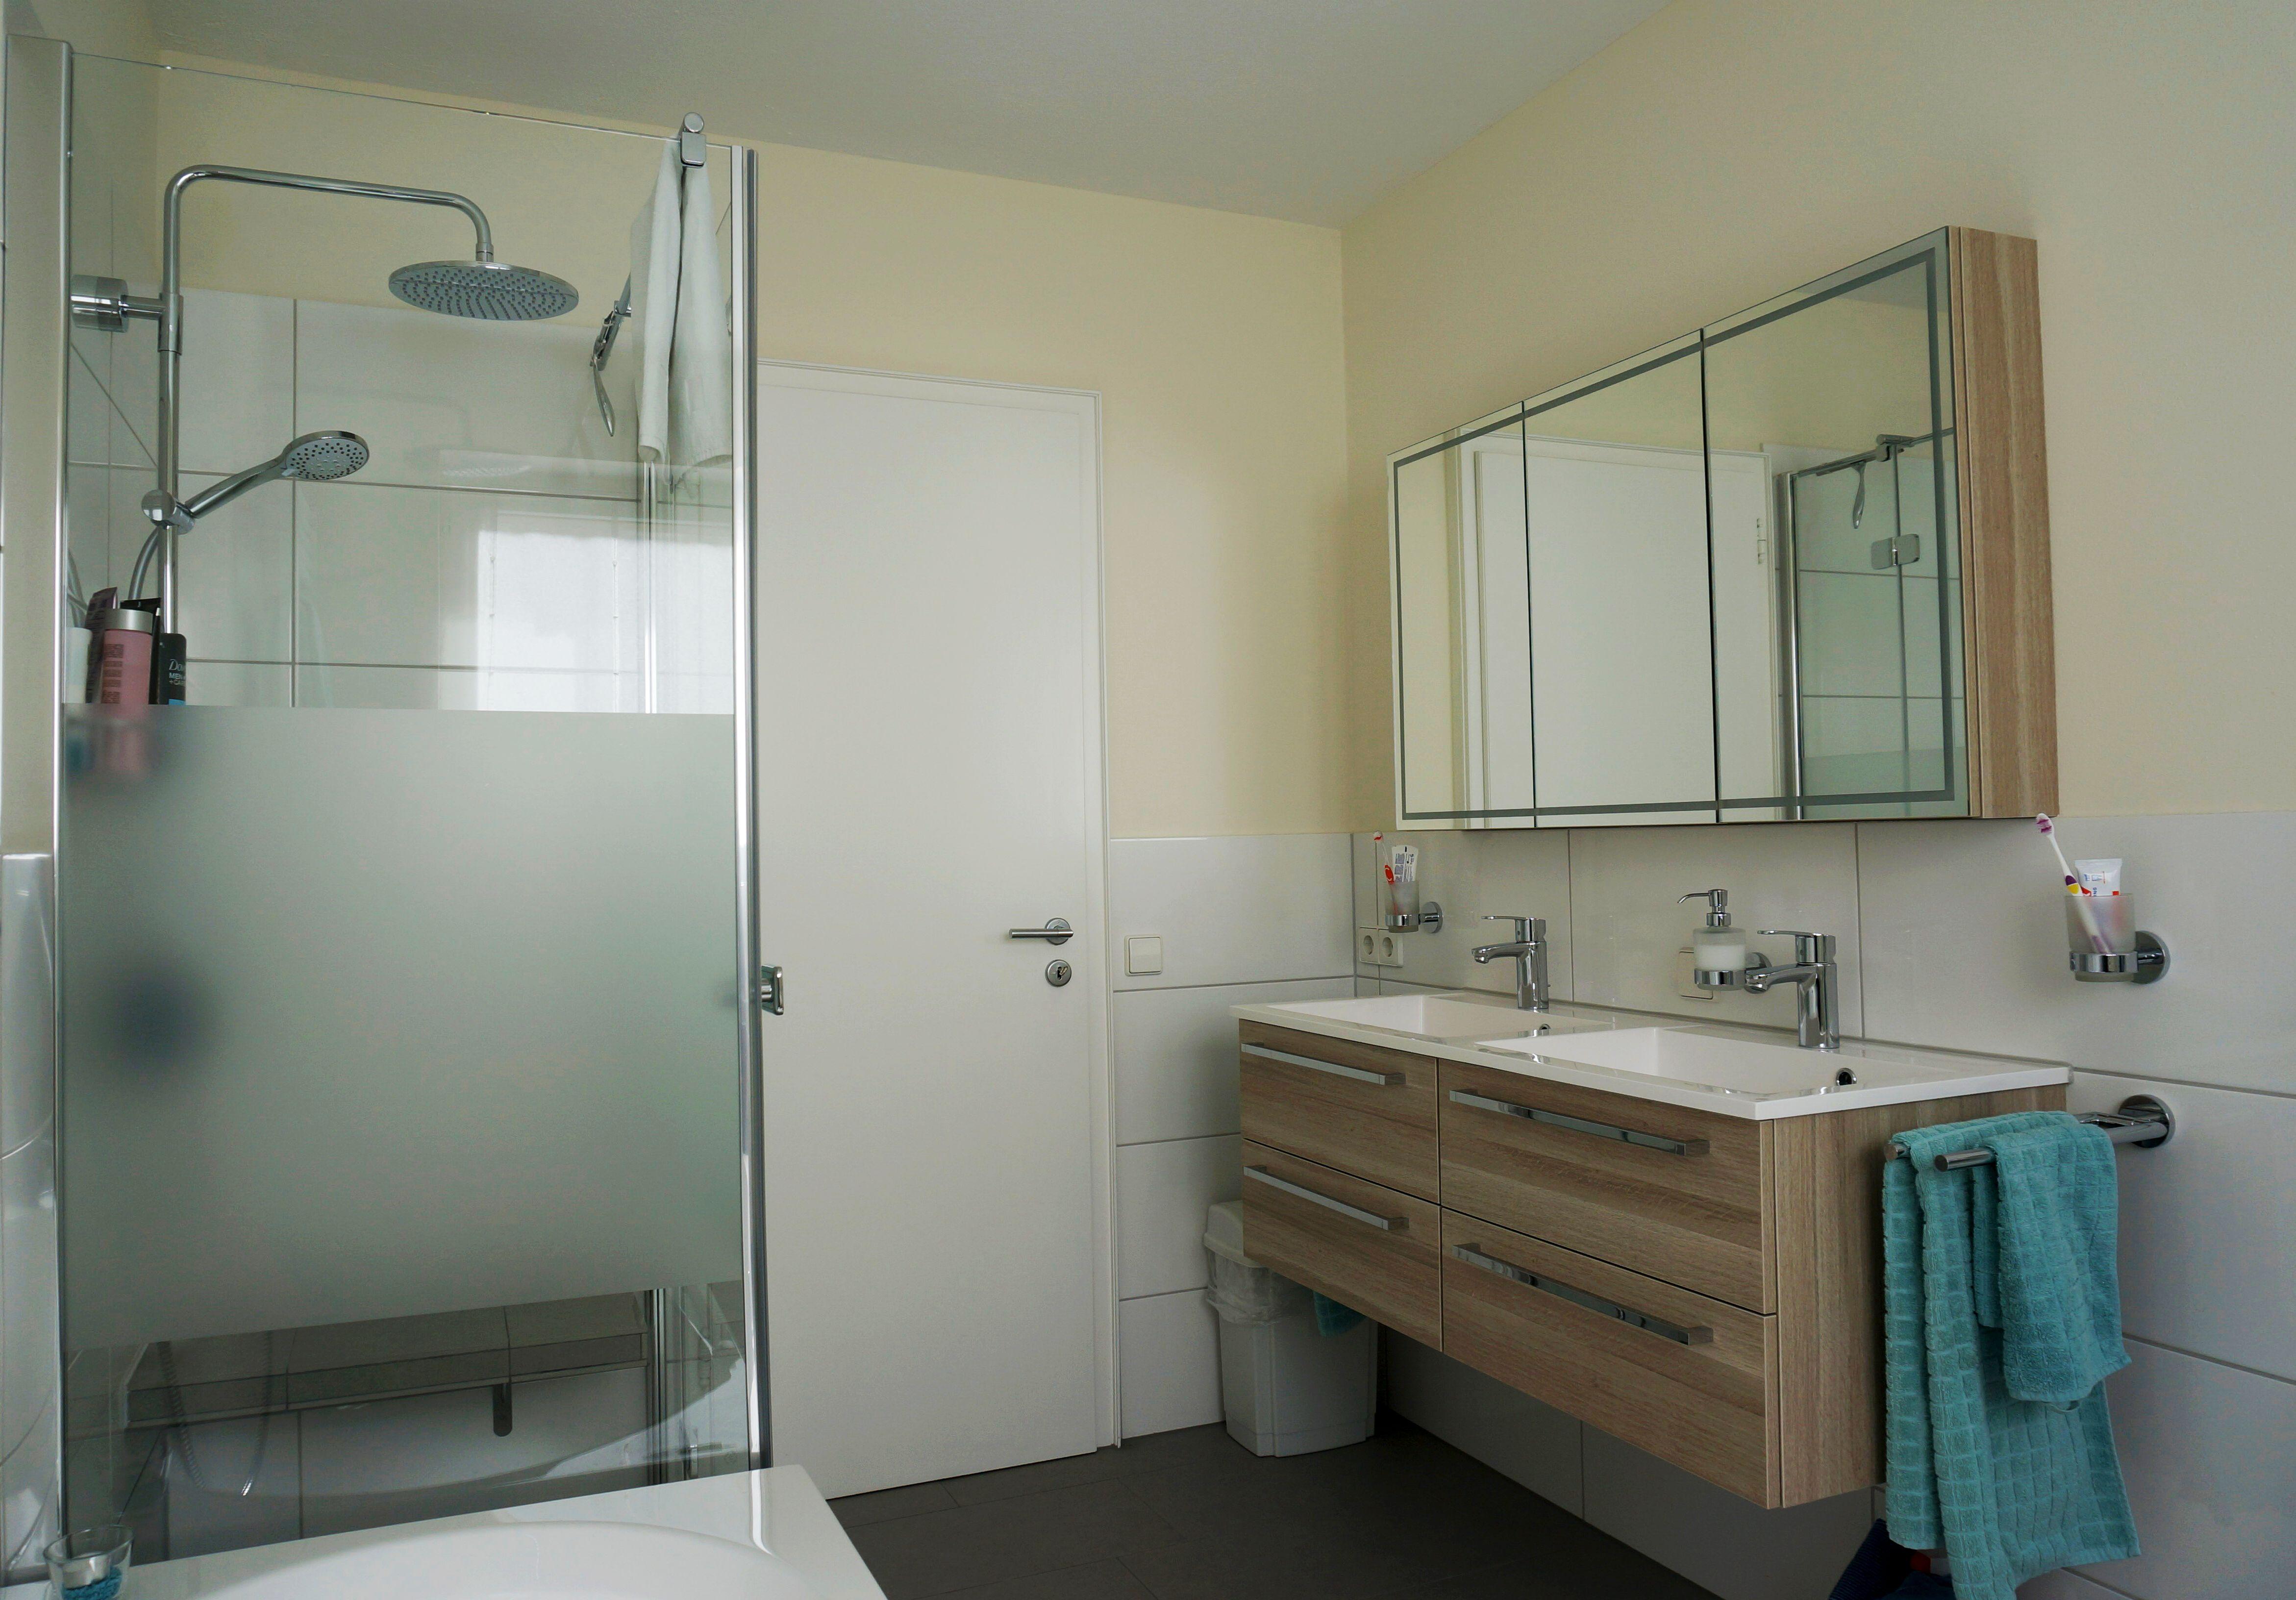 Helles Familienbad #badewanne #dusche #spiegelschrank #doppelwaschtisch ©HEIMWOHL GmbH